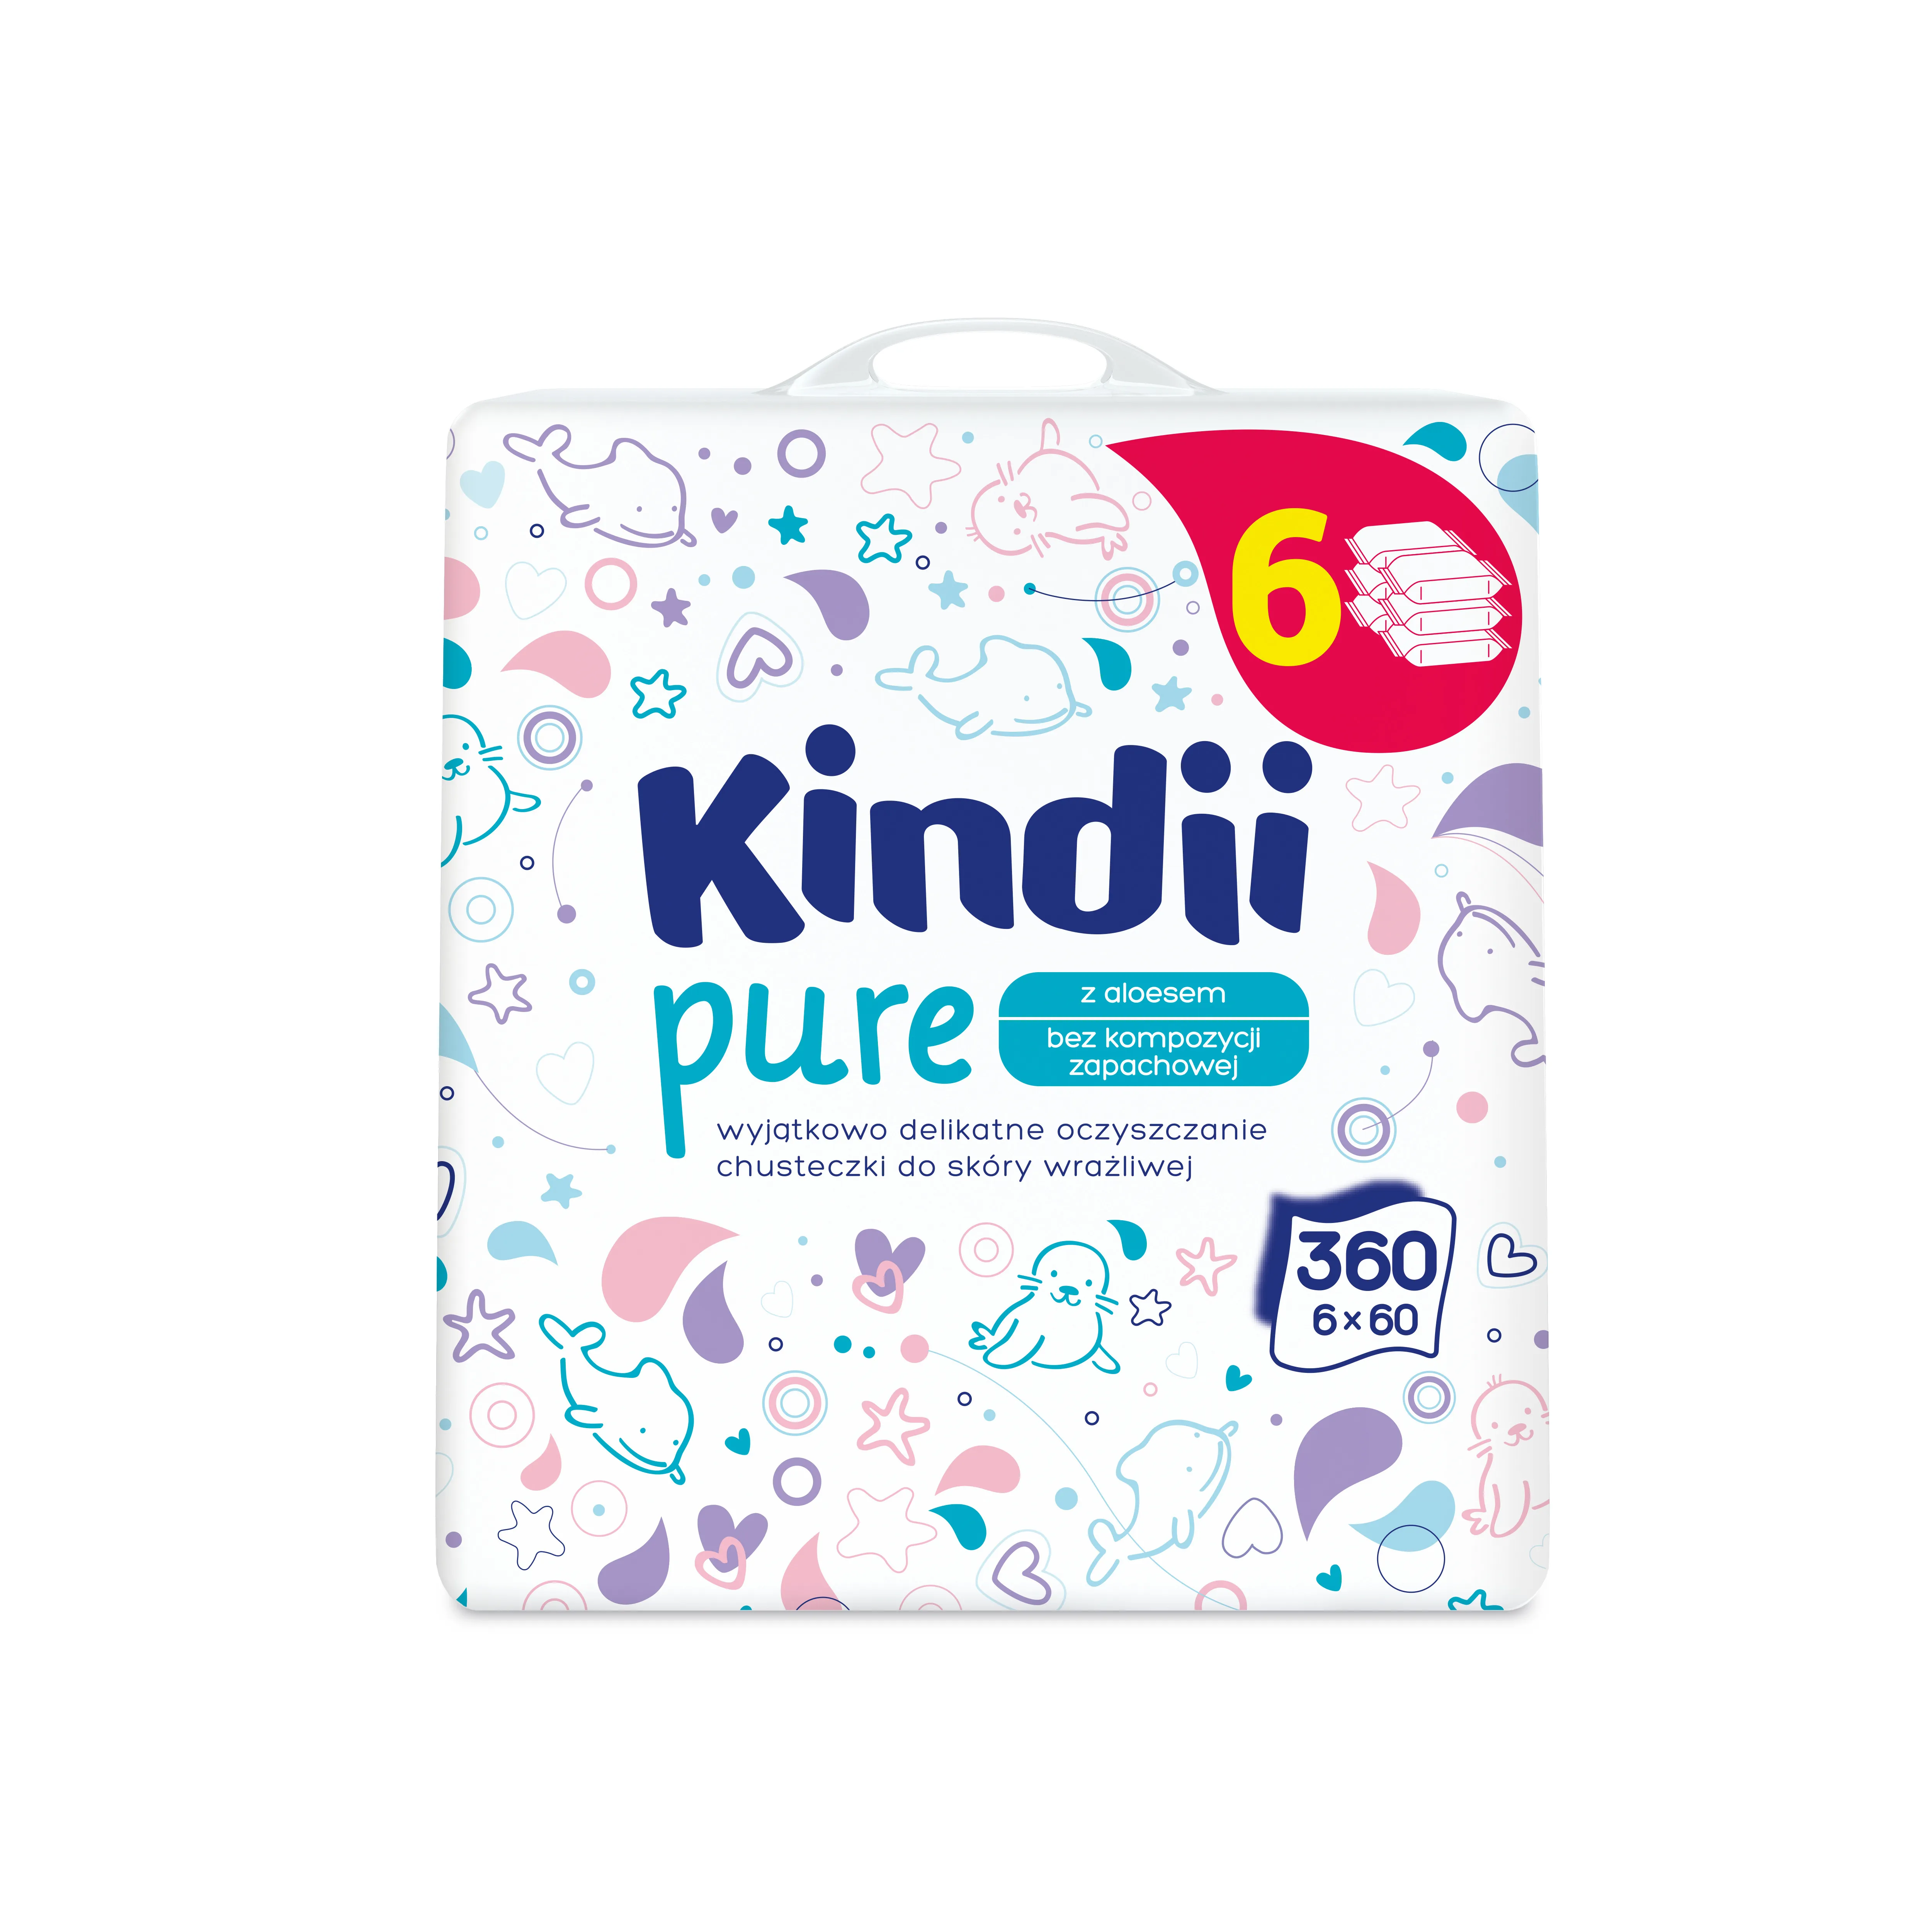 Kindii Pure, chusteczki dla dzieci do skóry wrażliwej, 360 sztuk